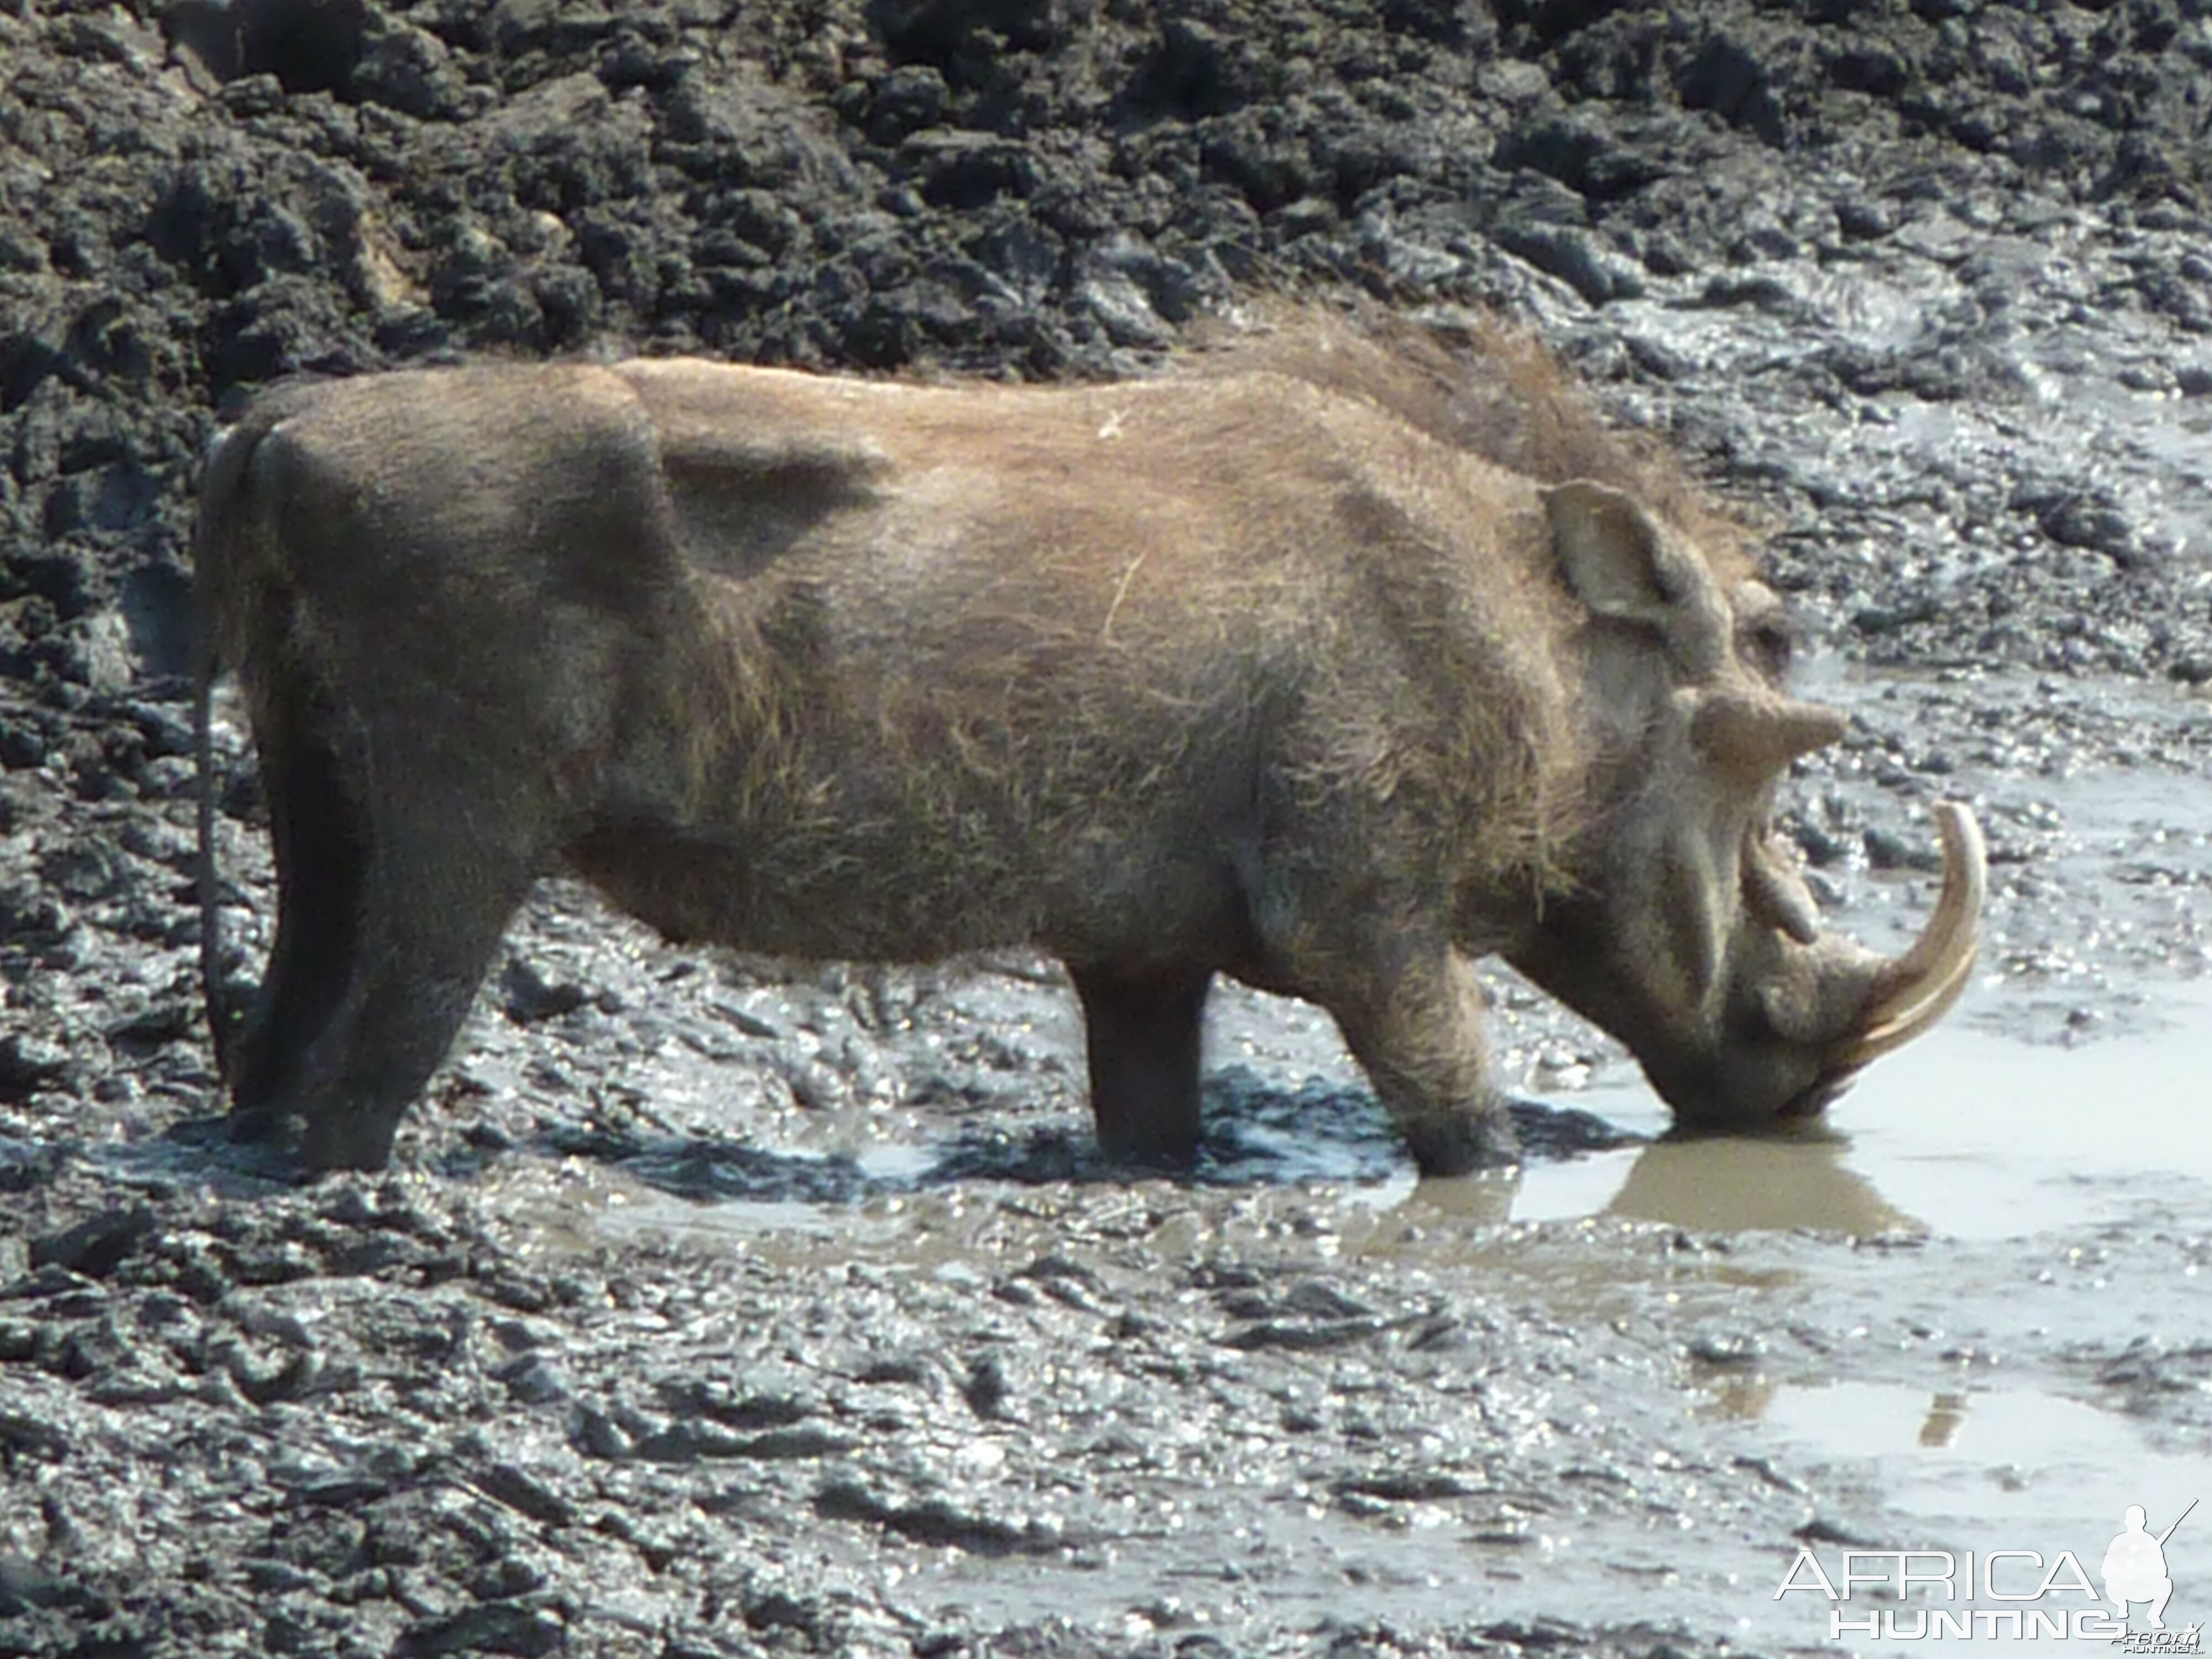 Hunting Warthog Namibia